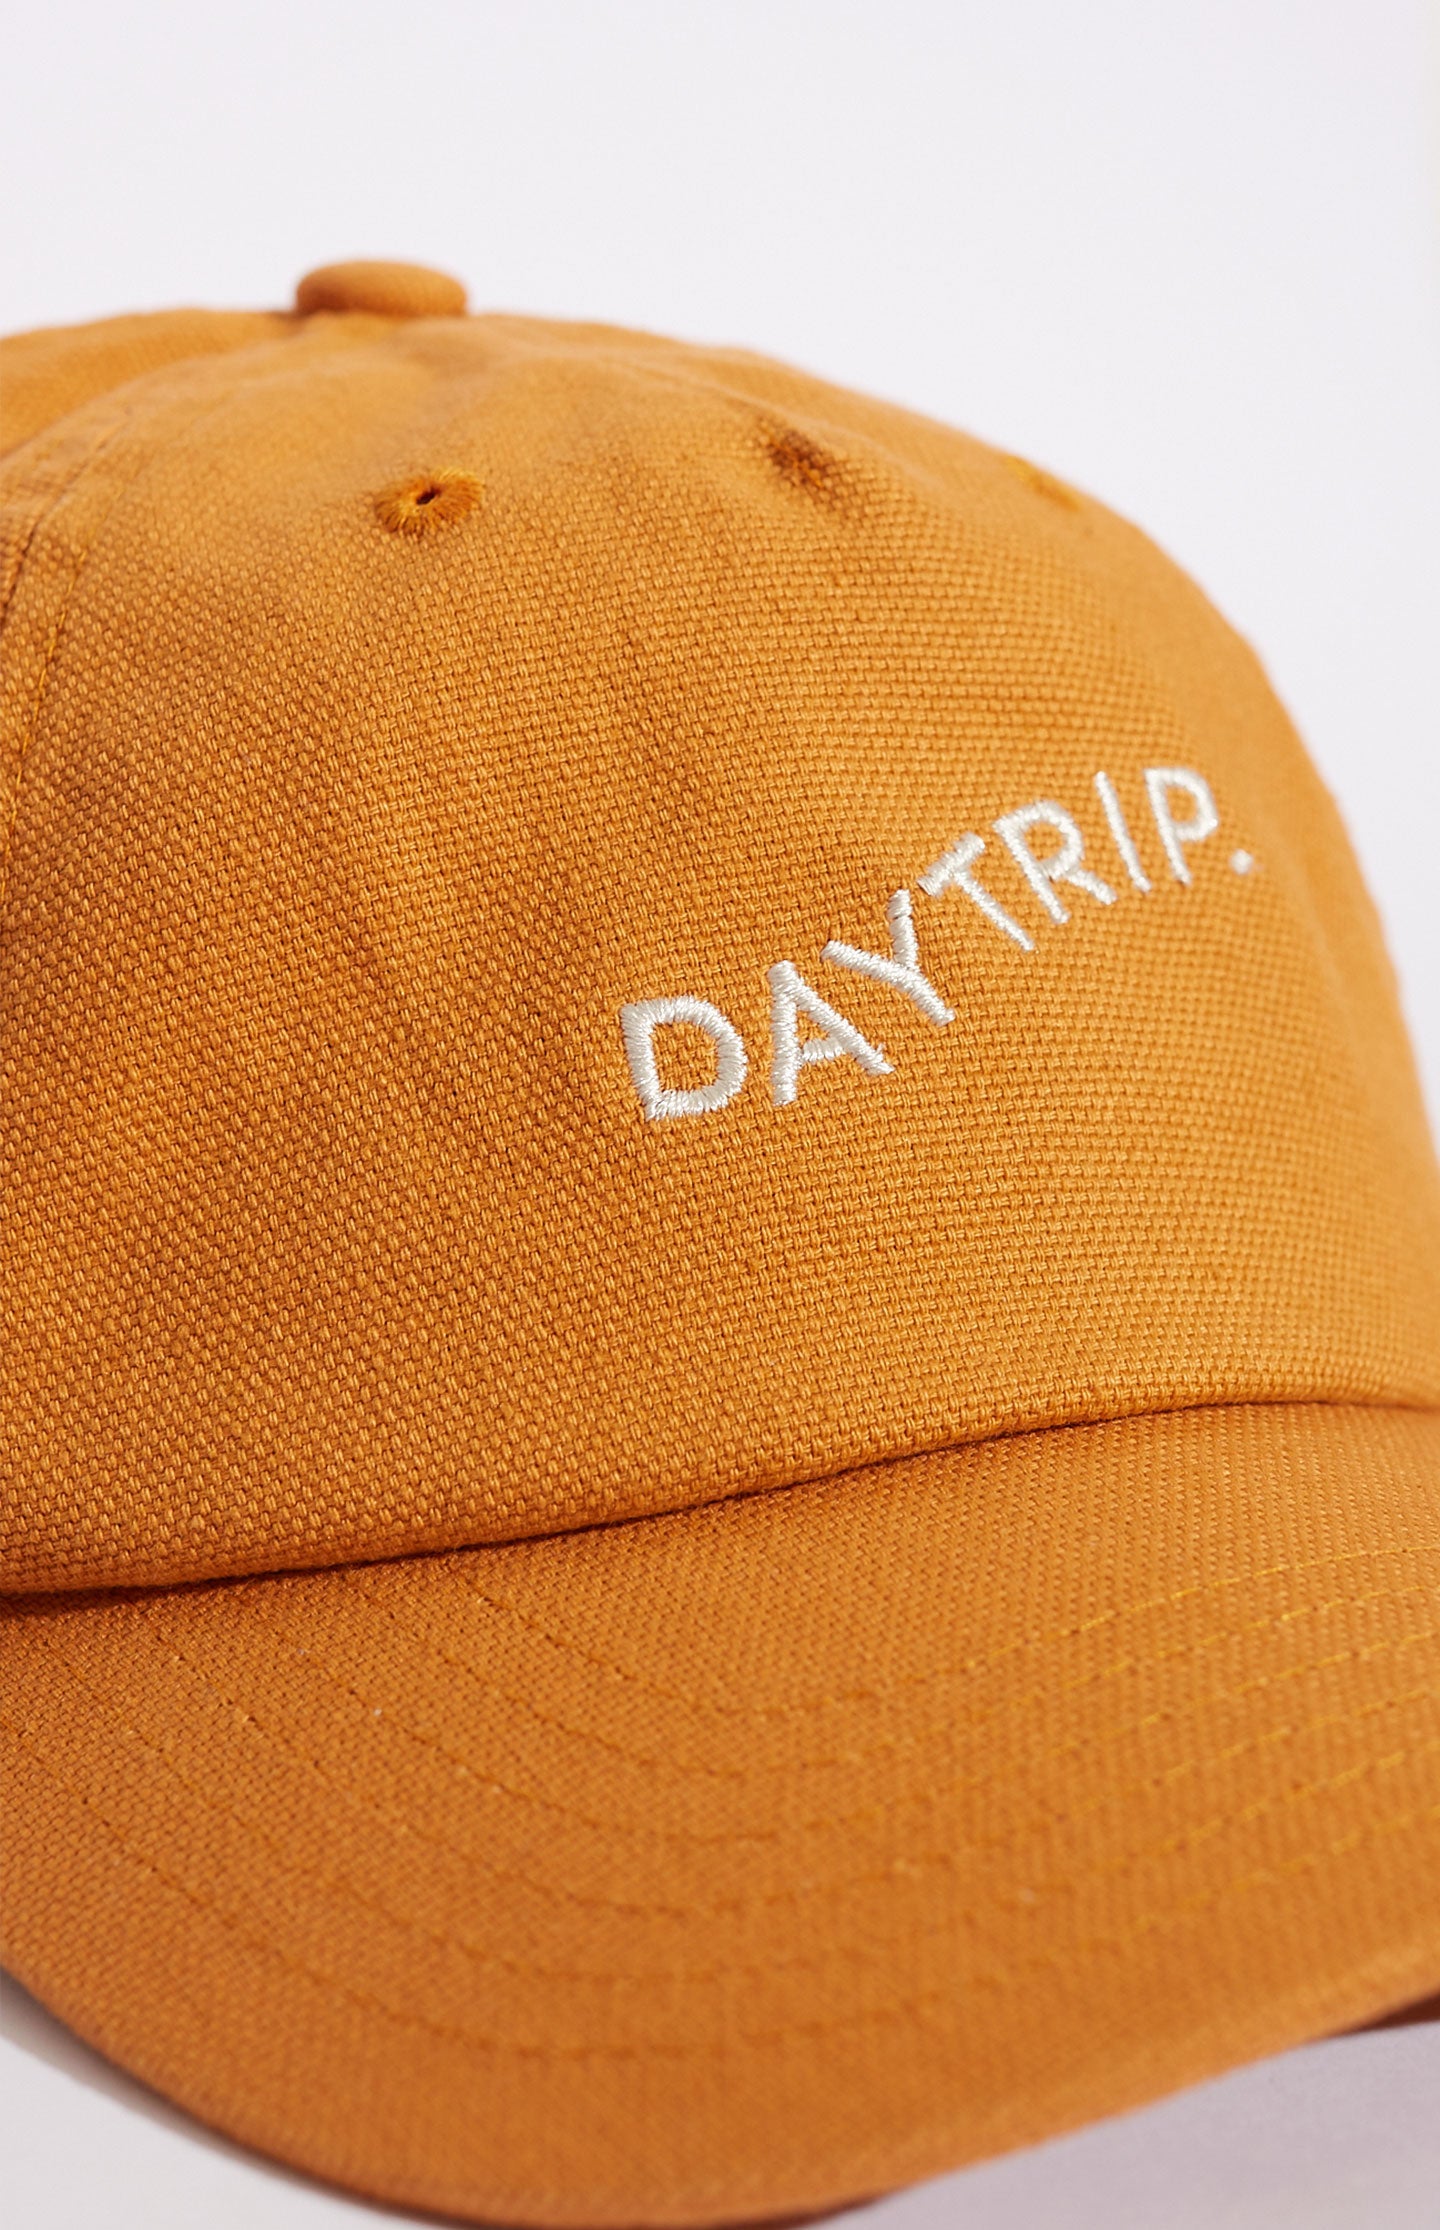 Daytrip Store - Trip Cap - Rust